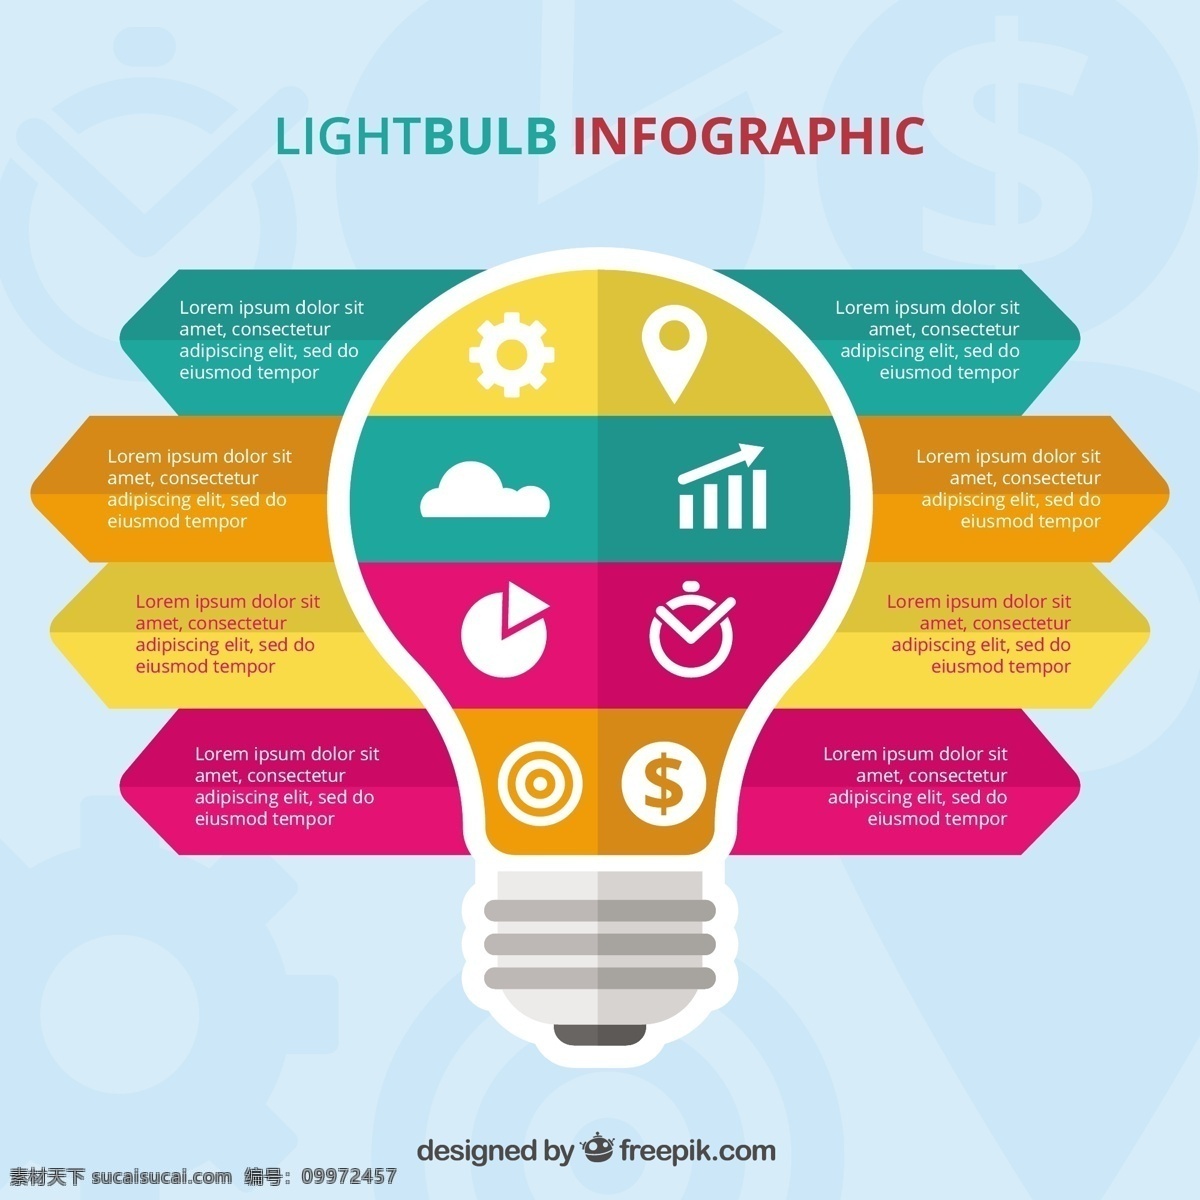 商业 图表 模板 不同 阶段 业务 光 营销 平面 图 能量 灯泡 彩色 平面设计 信息 流程 数据 步骤